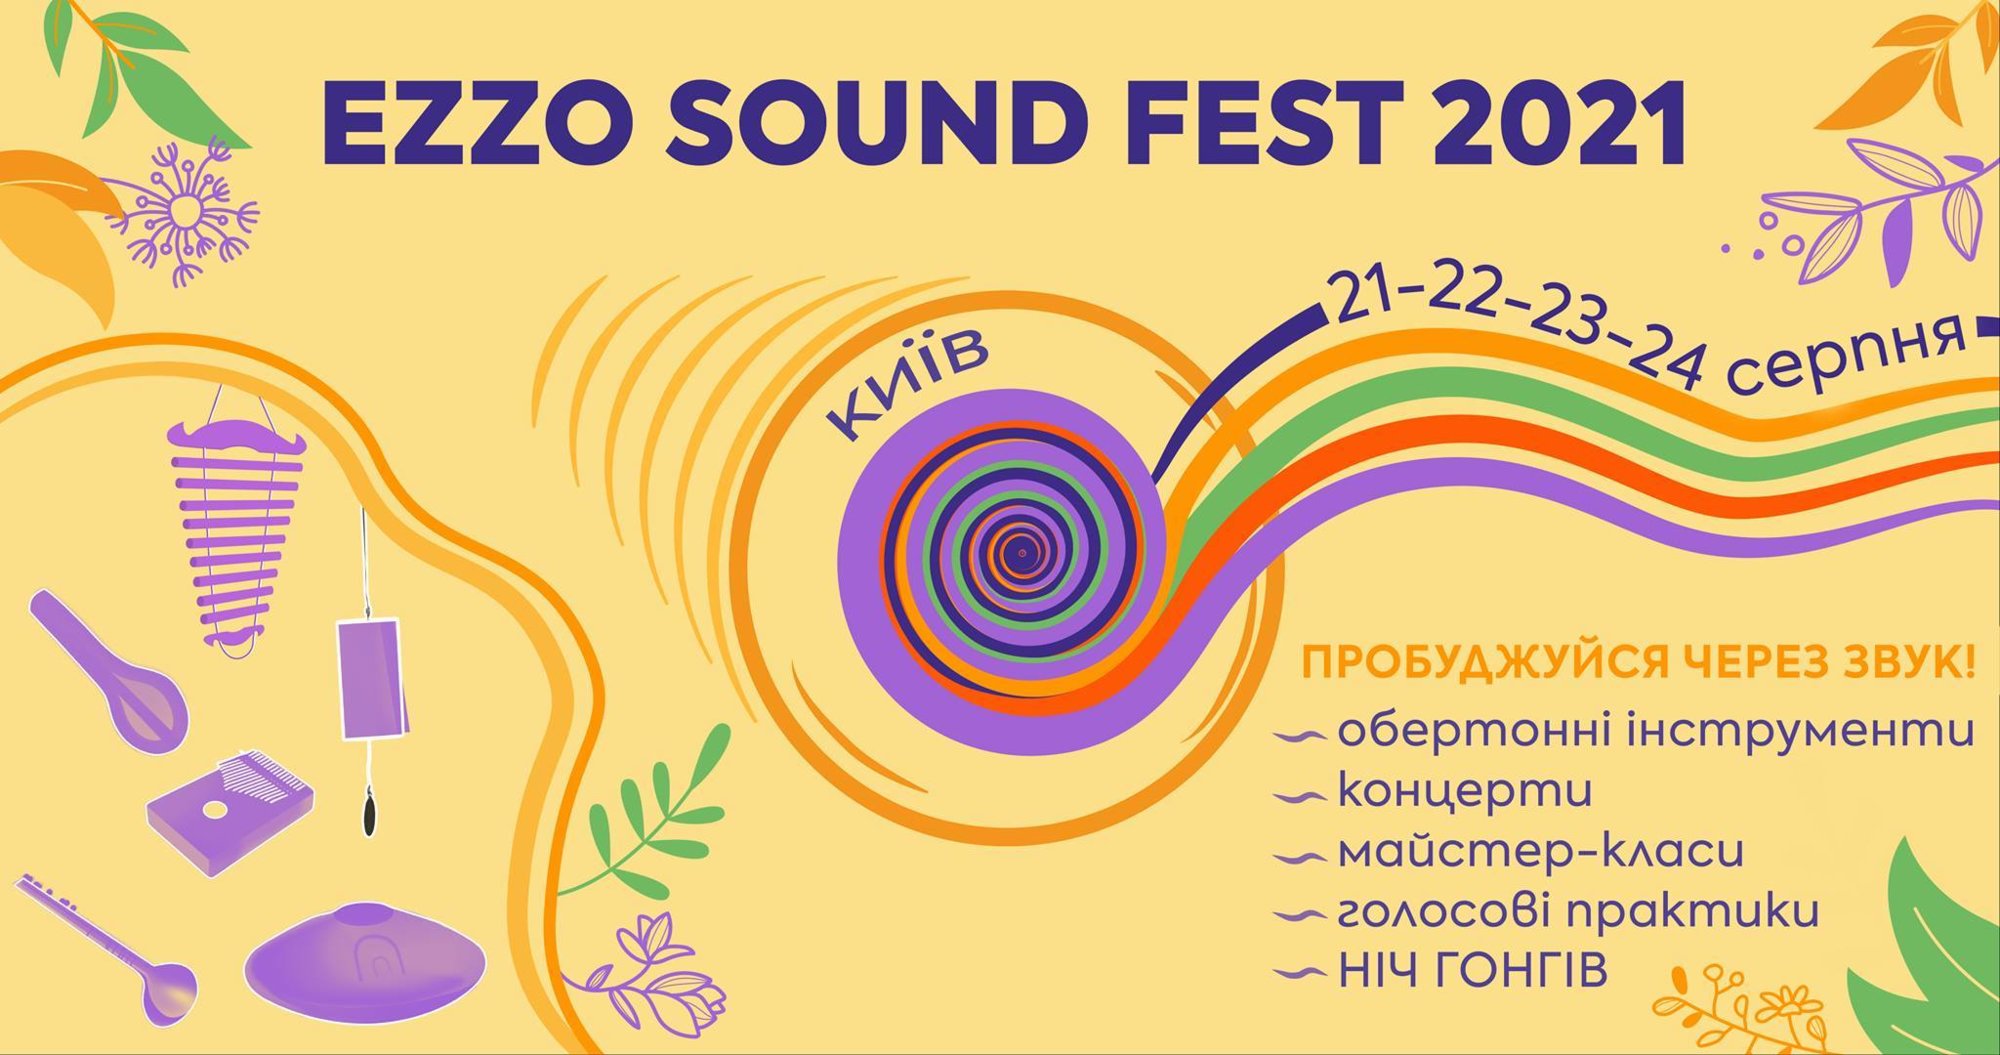 Ezzo Sound Fest 2021